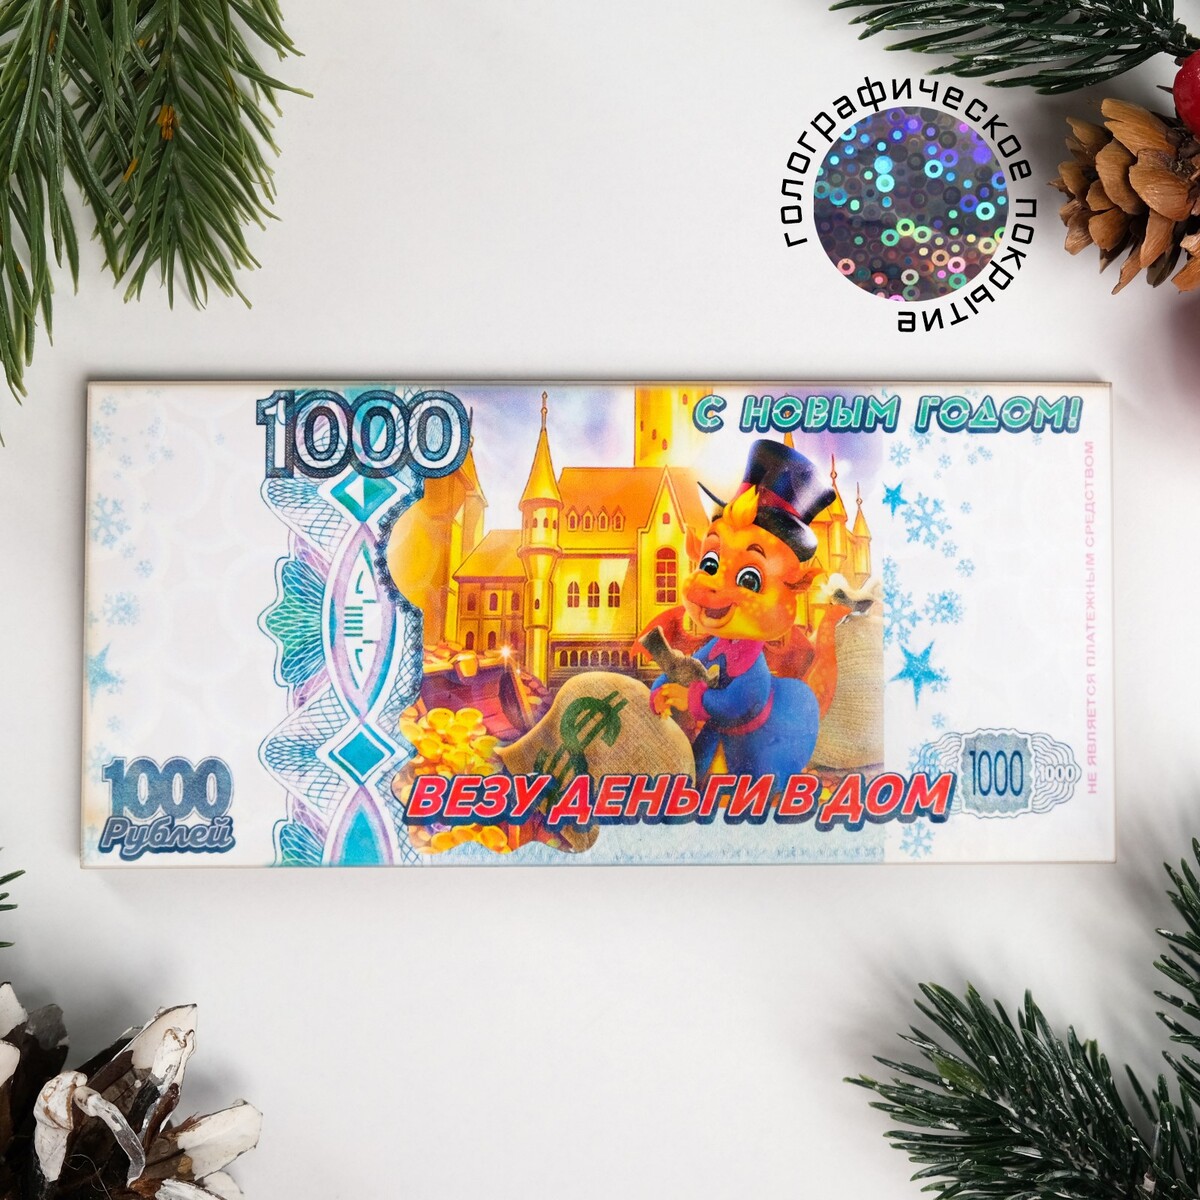 Магнит новогодний купюра Дарим Красиво 05580619: купить за 120 руб в  интернет магазине с бесплатной доставкой